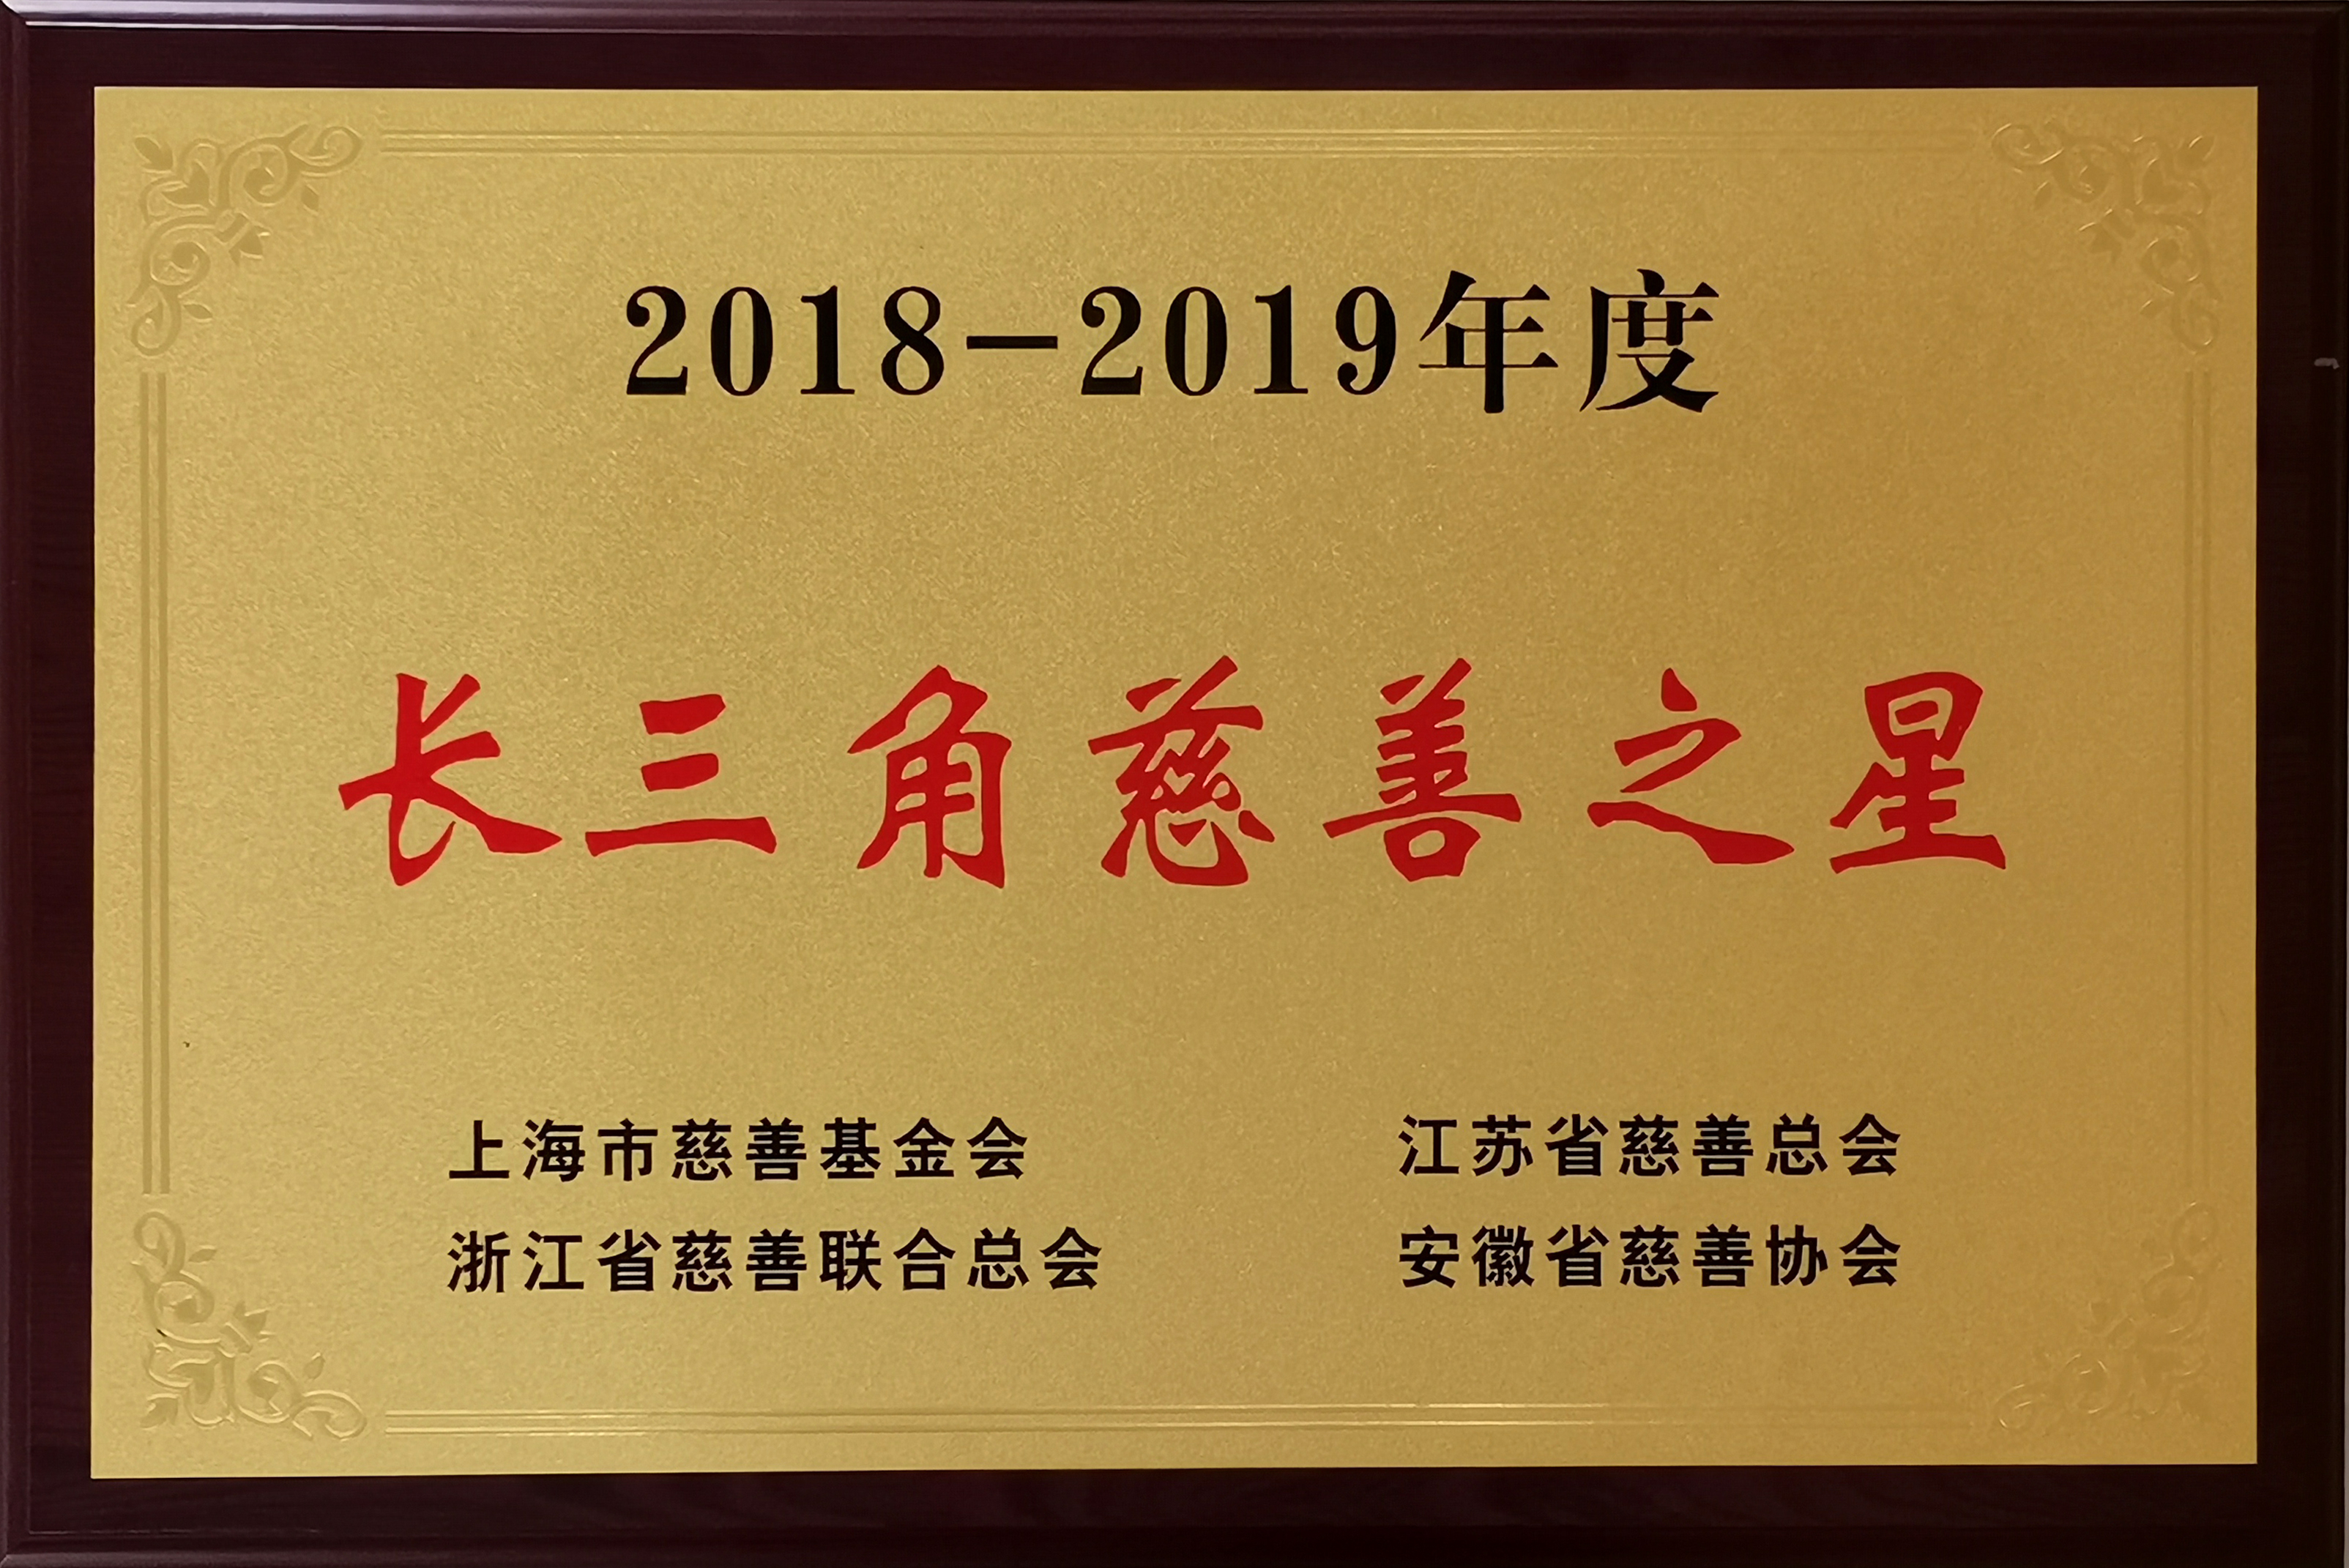 董事长沈小平荣获“2018-2019年度长三角慈善之星”荣誉称号